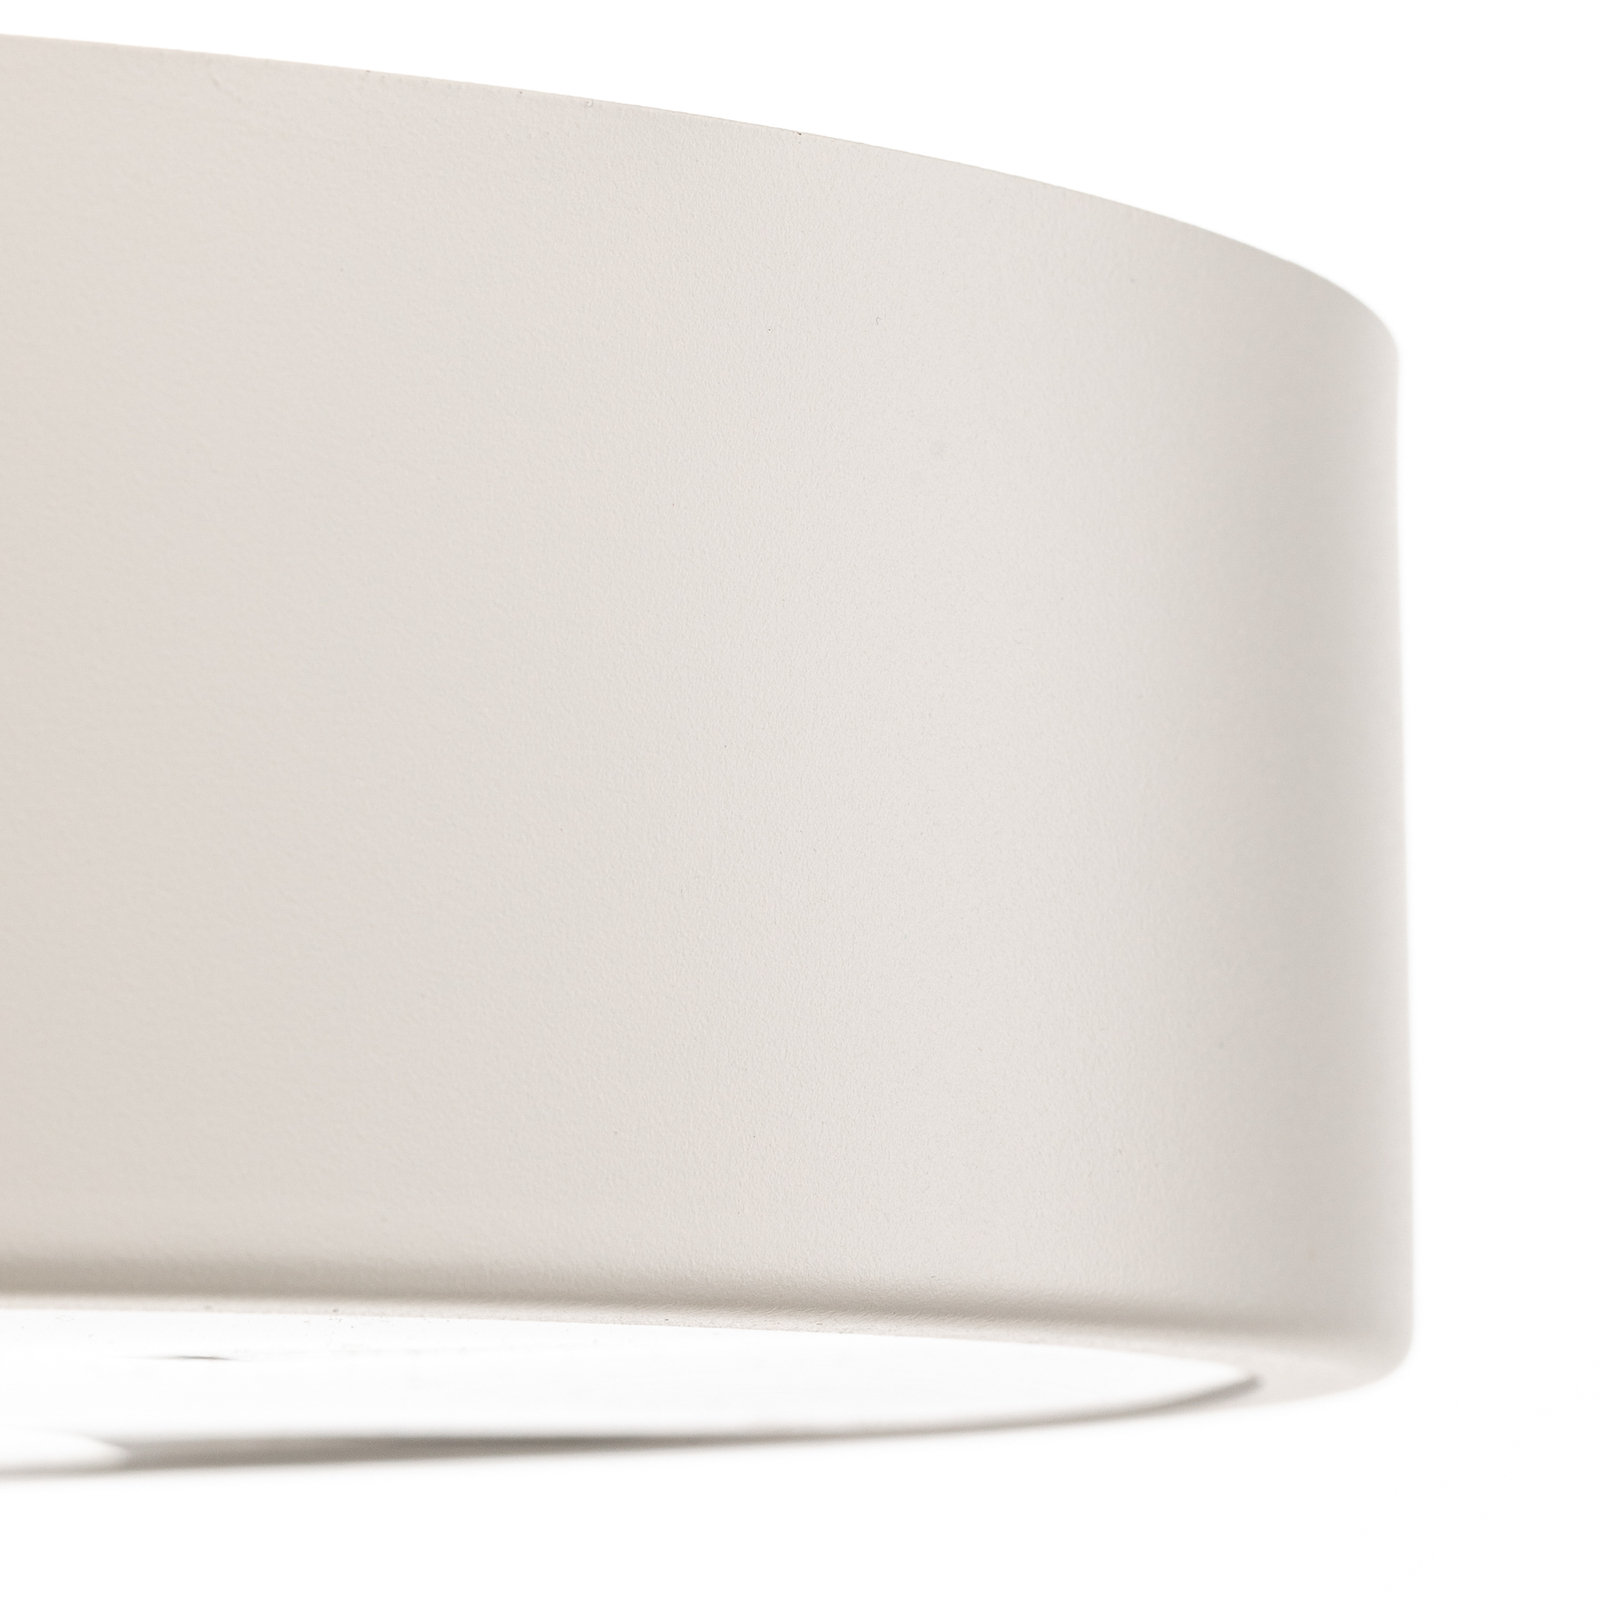 Cleo 400 ceiling light, IP54, Ø 40 cm white